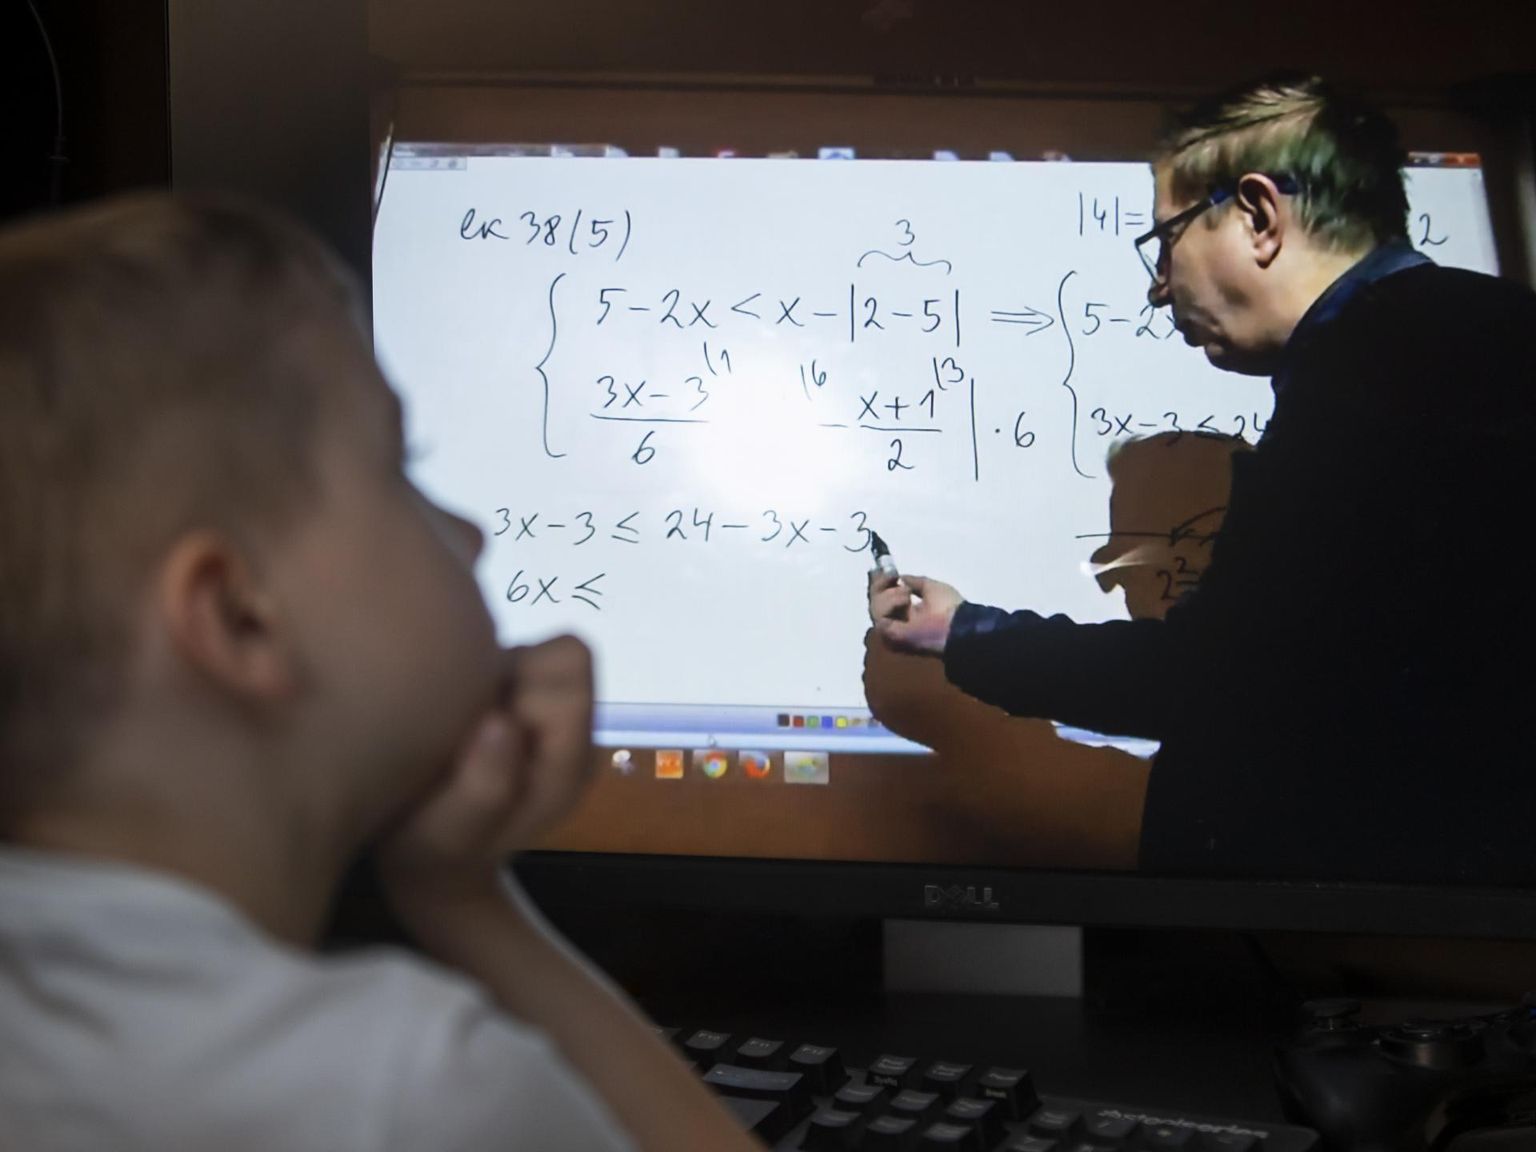 Loo keskkooli matemaatikaõpetaja Allar Veelmaa viis eilsest klassitunnid üle Facebooki, kus õpilased saavad reaalajas küsimusi esitada.